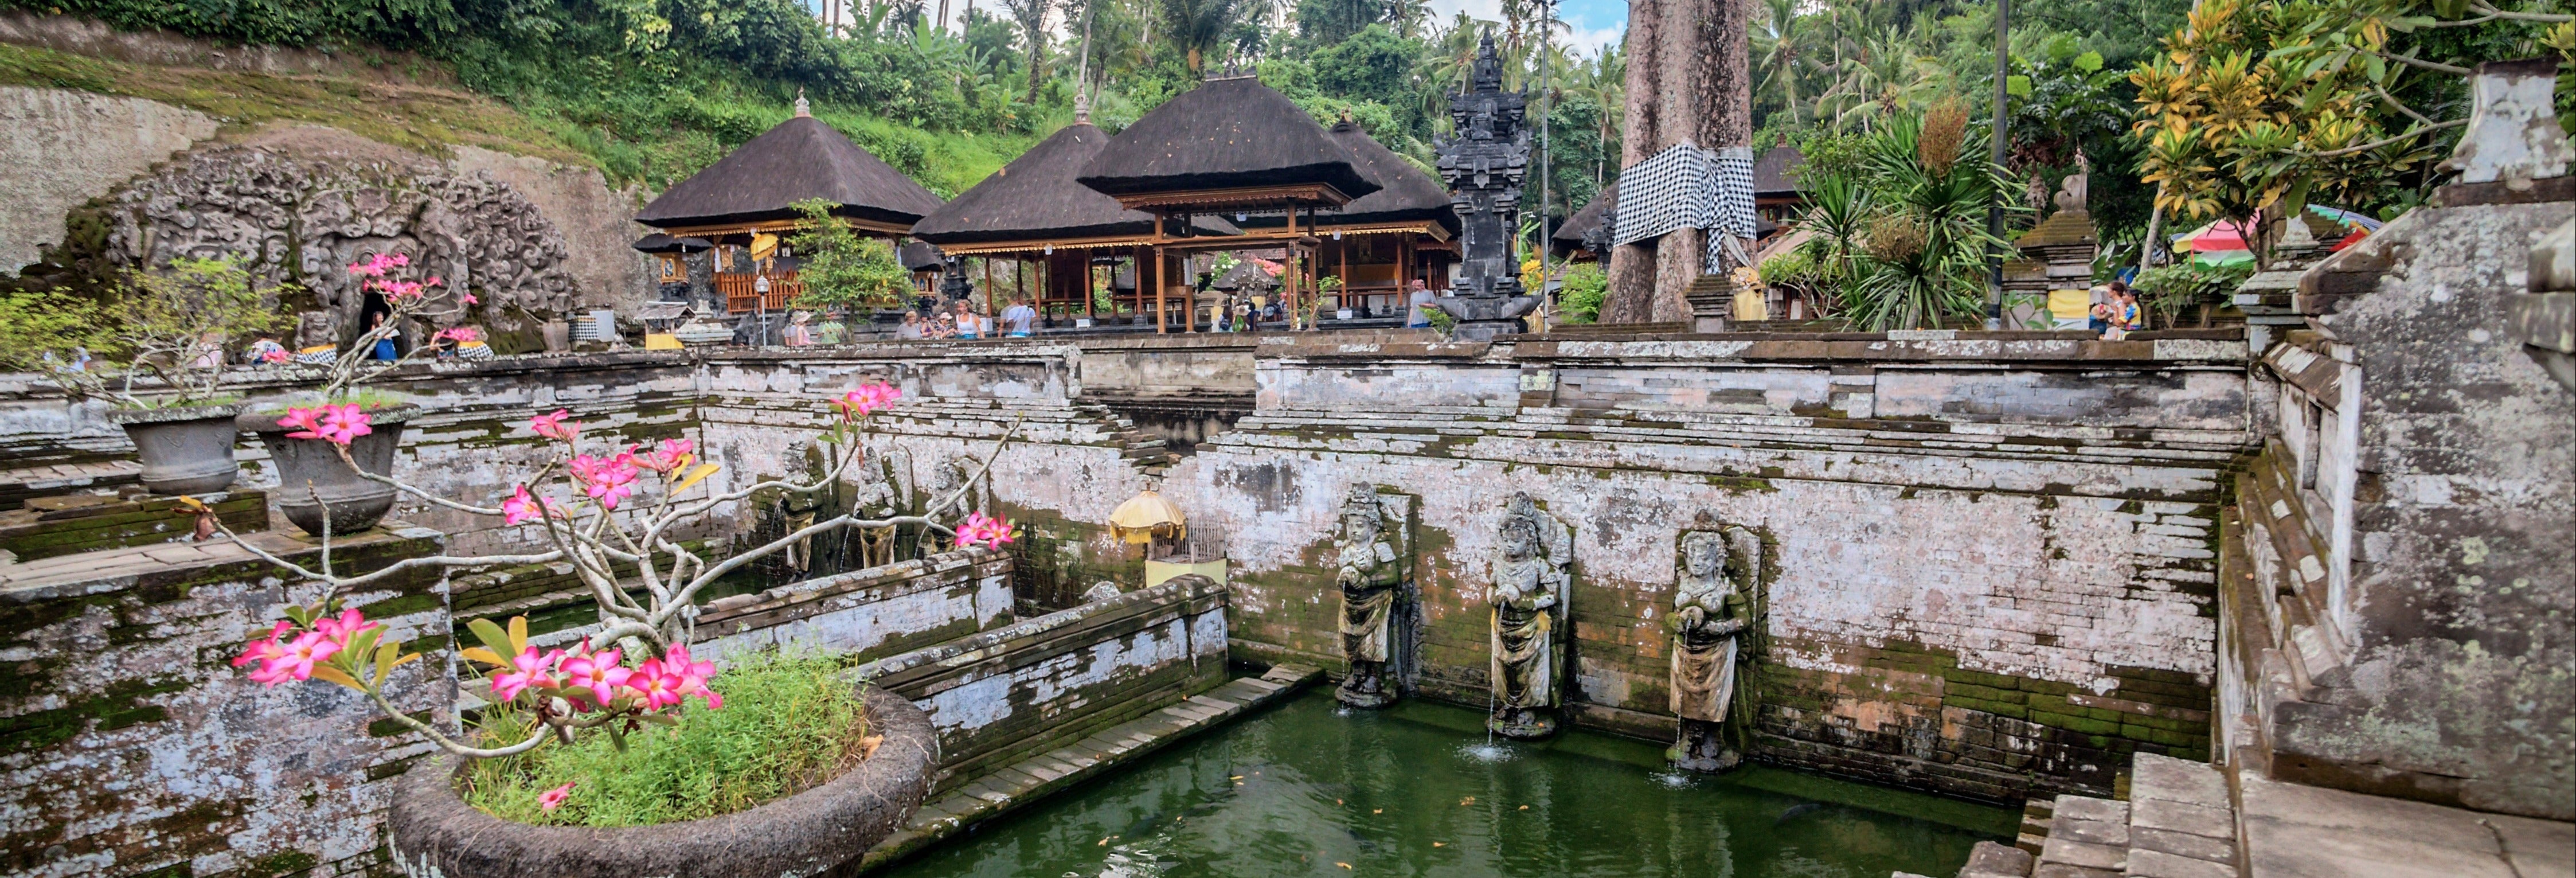 Tour privado por Ubud, Goa Gajah e centro de Bali